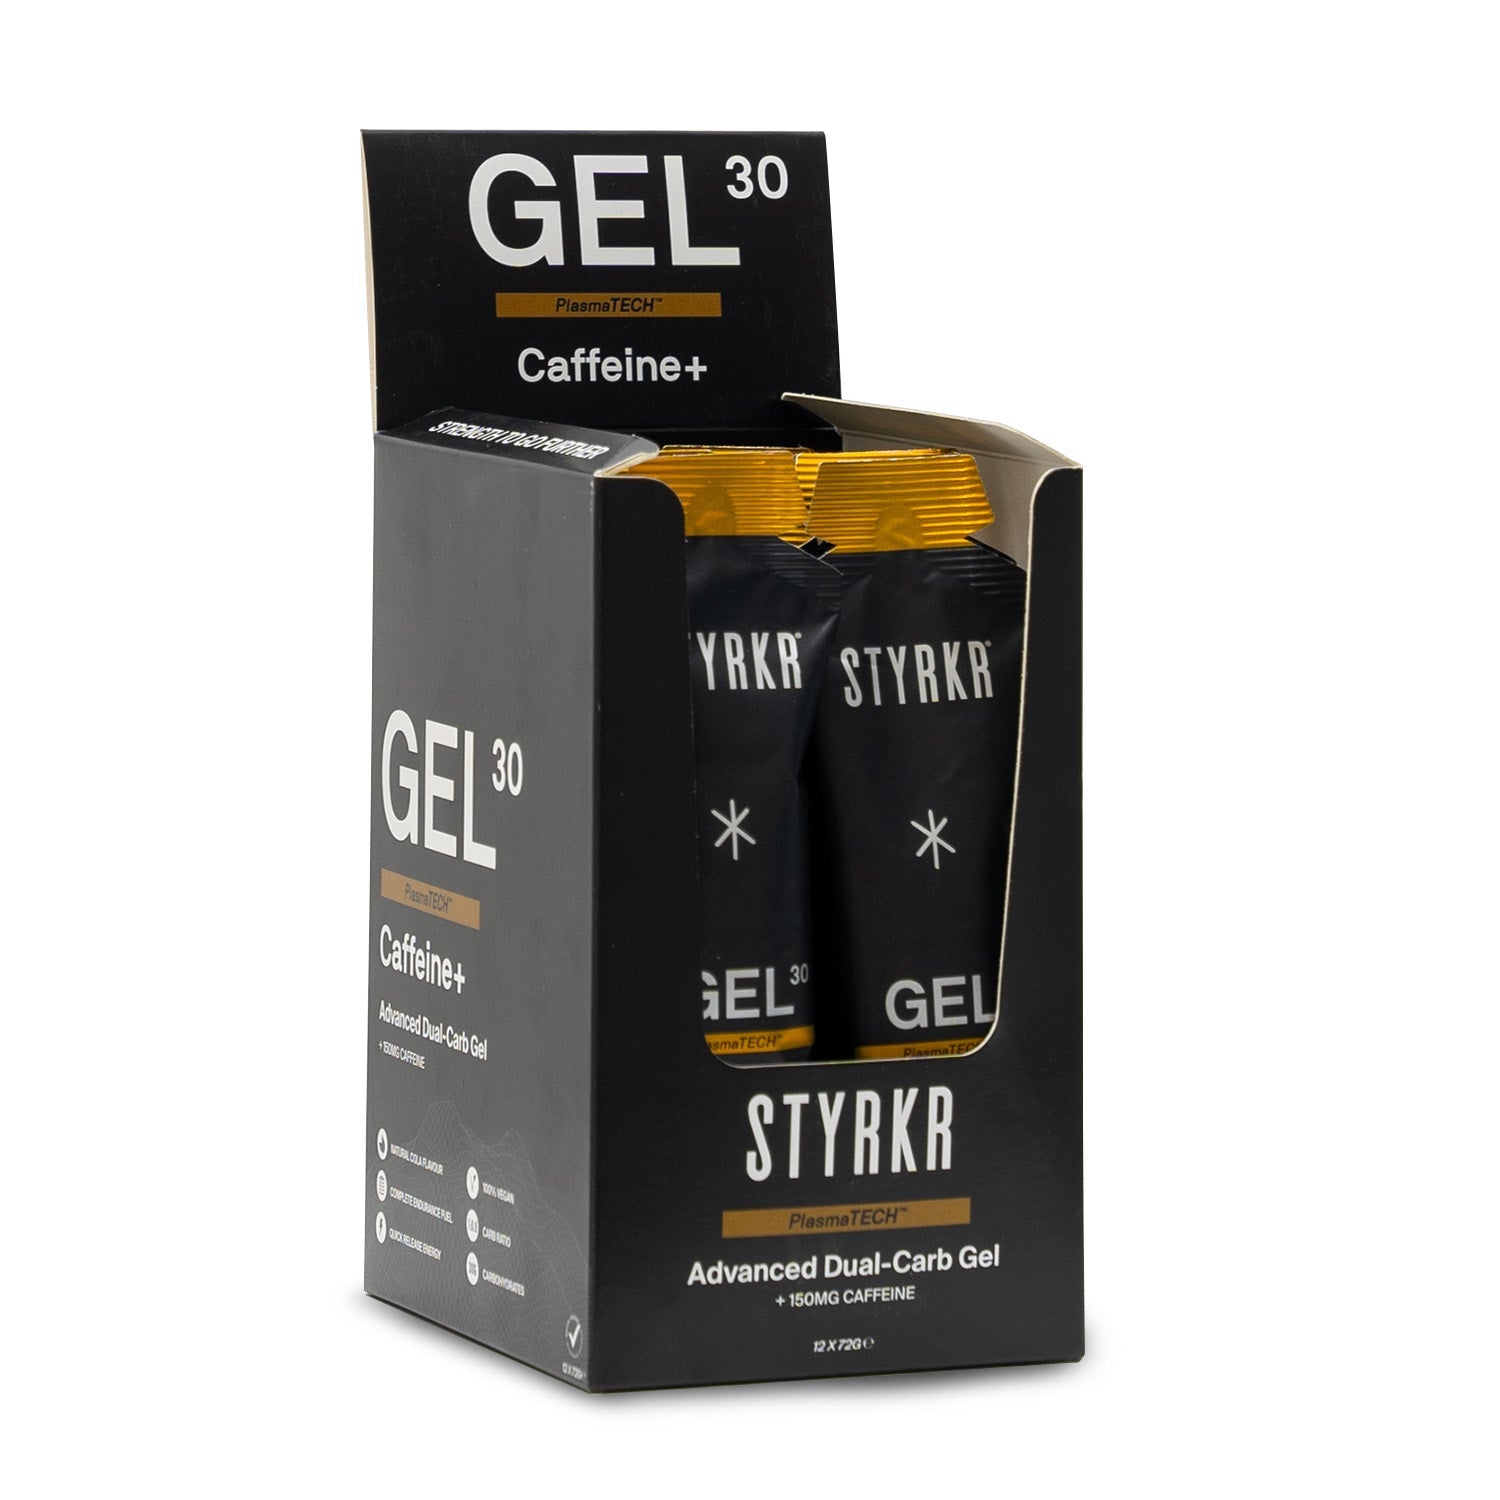 STYRKR Gel30 Gel energetico doppio carboidrato Caffeina 150mg Box (12x72gr)